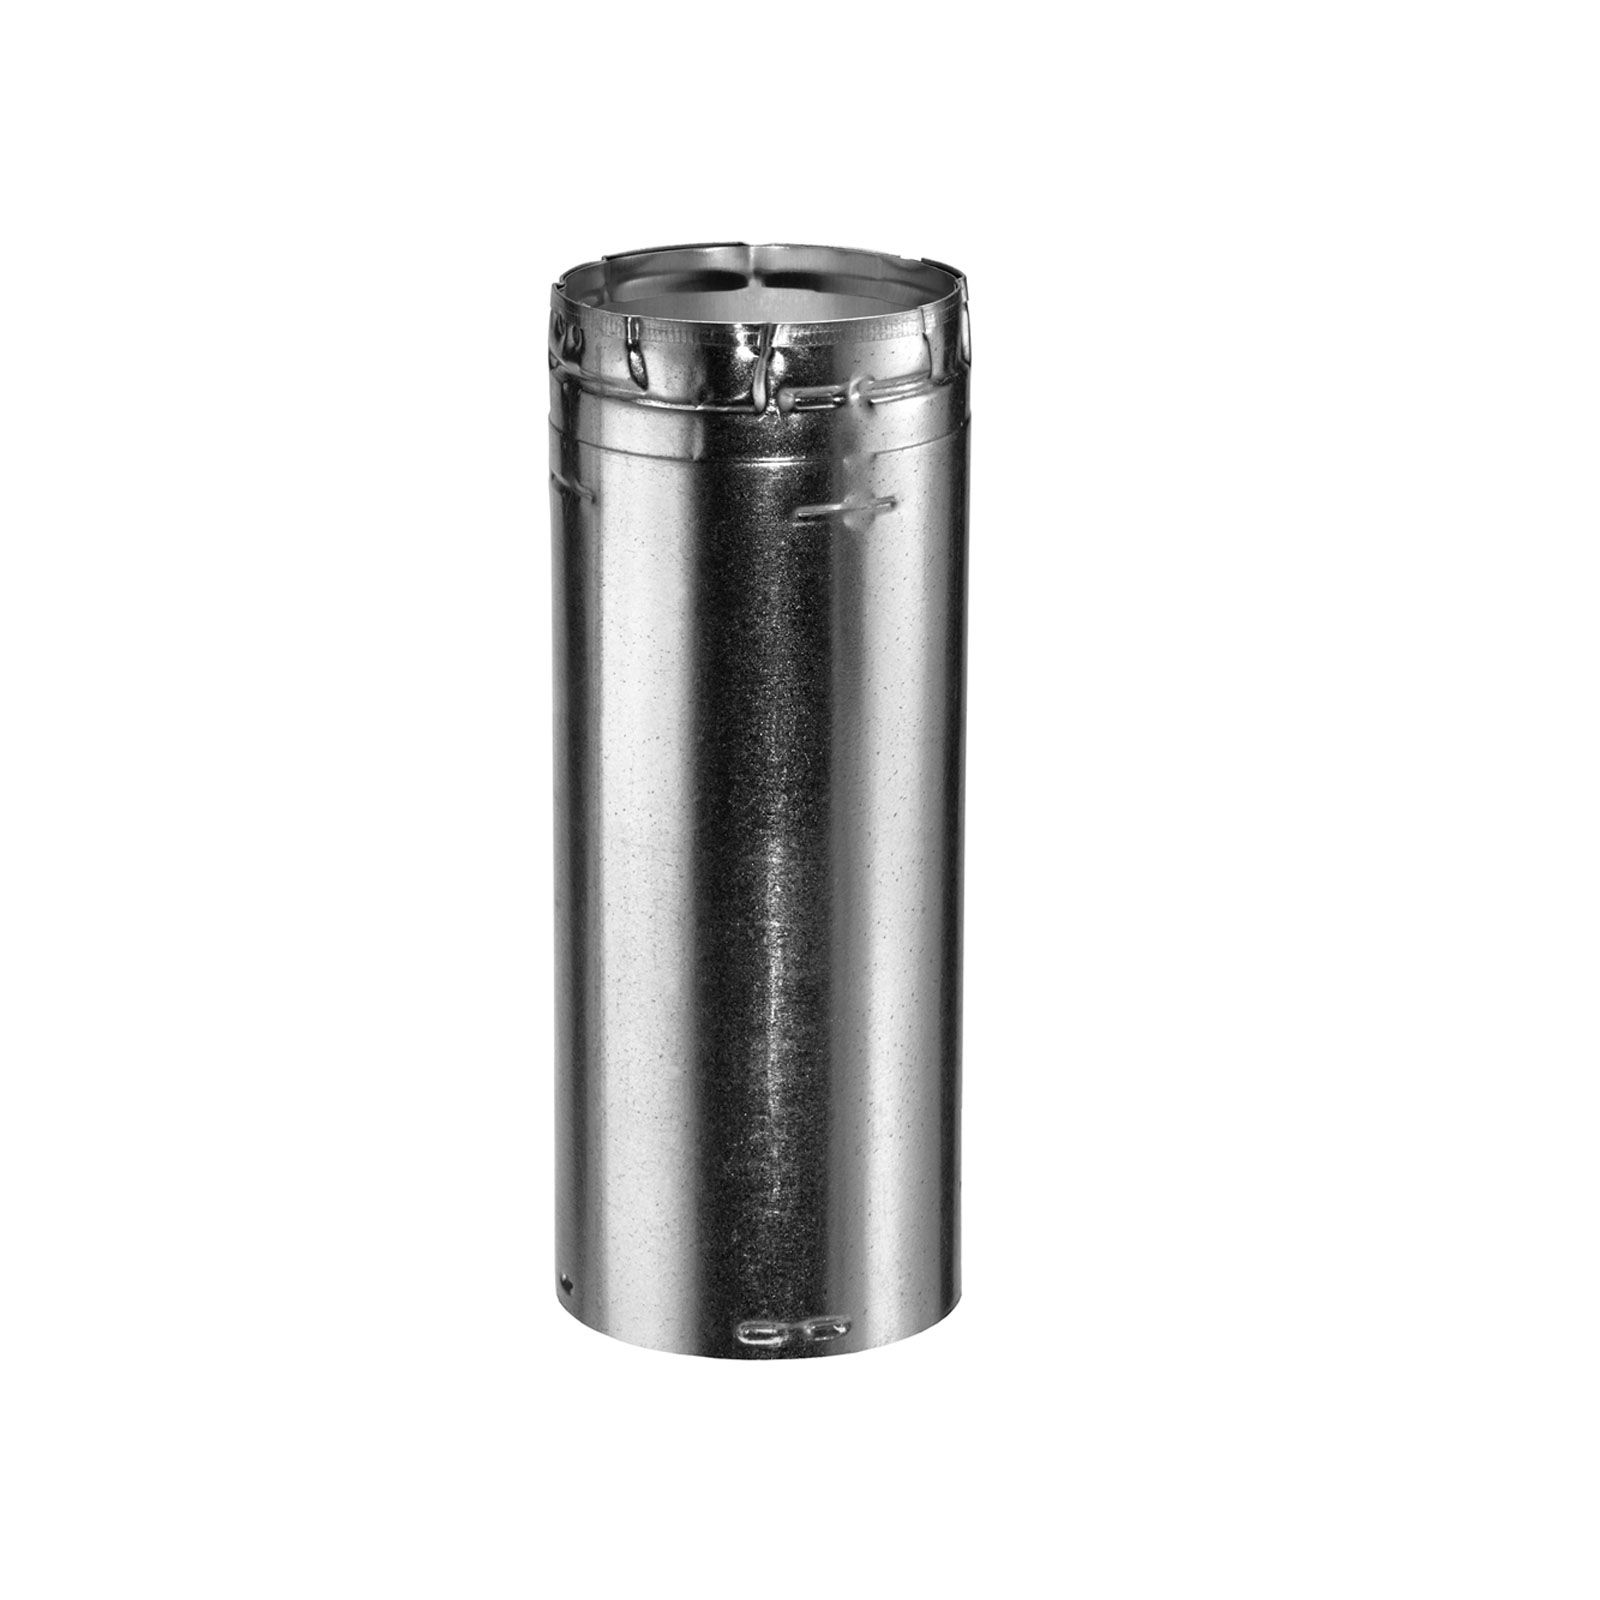 DuraVent 3GV36 - Aluminum 36" Length Round Rigid Pipe with 3" Inner Diameter